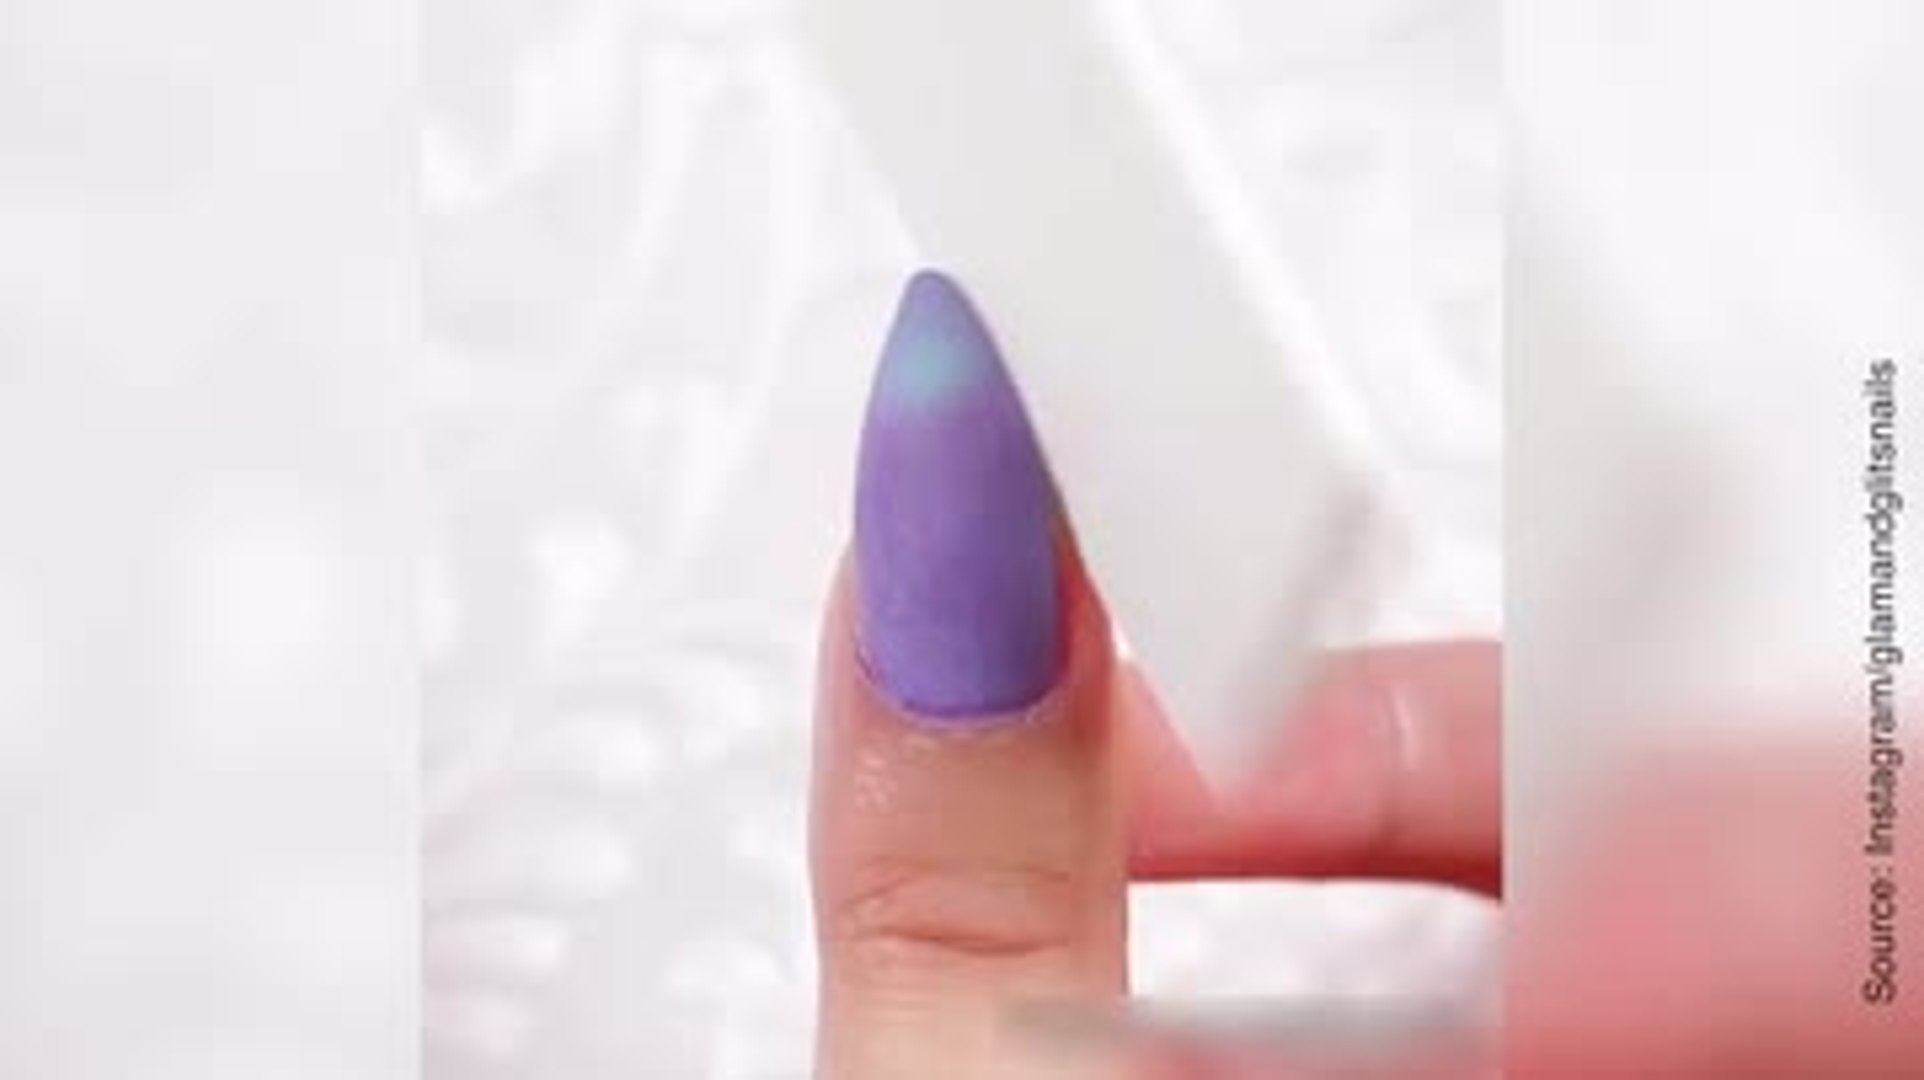 Un vernis qui change de couleur selon la température - Vidéo Dailymotion